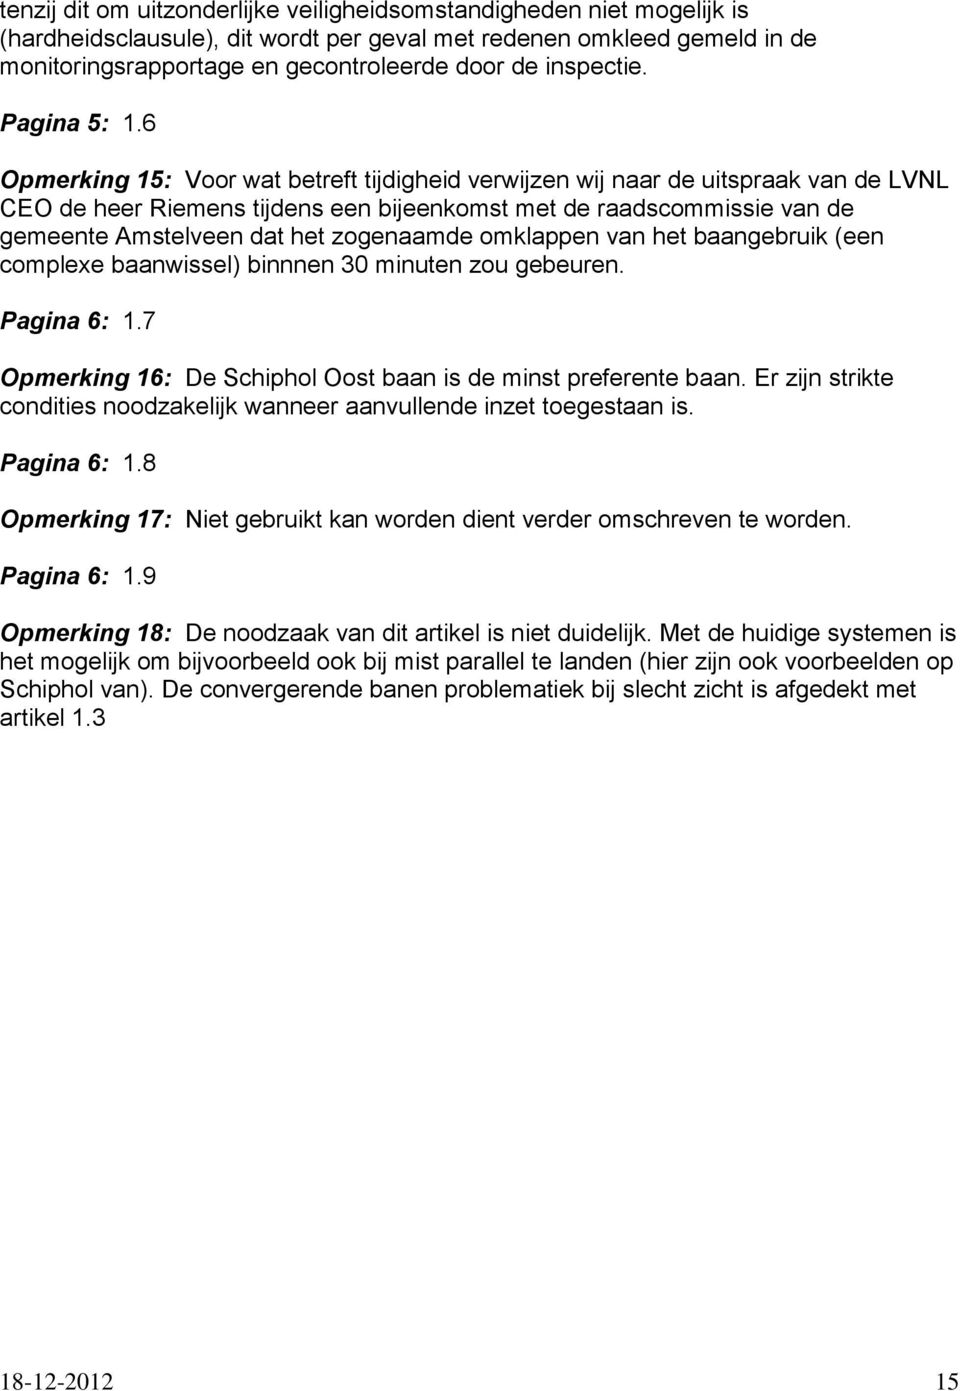 6 Opmerking 15: Voor wat betreft tijdigheid verwijzen wij naar de uitspraak van de LVNL CEO de heer Riemens tijdens een bijeenkomst met de raadscommissie van de gemeente Amstelveen dat het zogenaamde